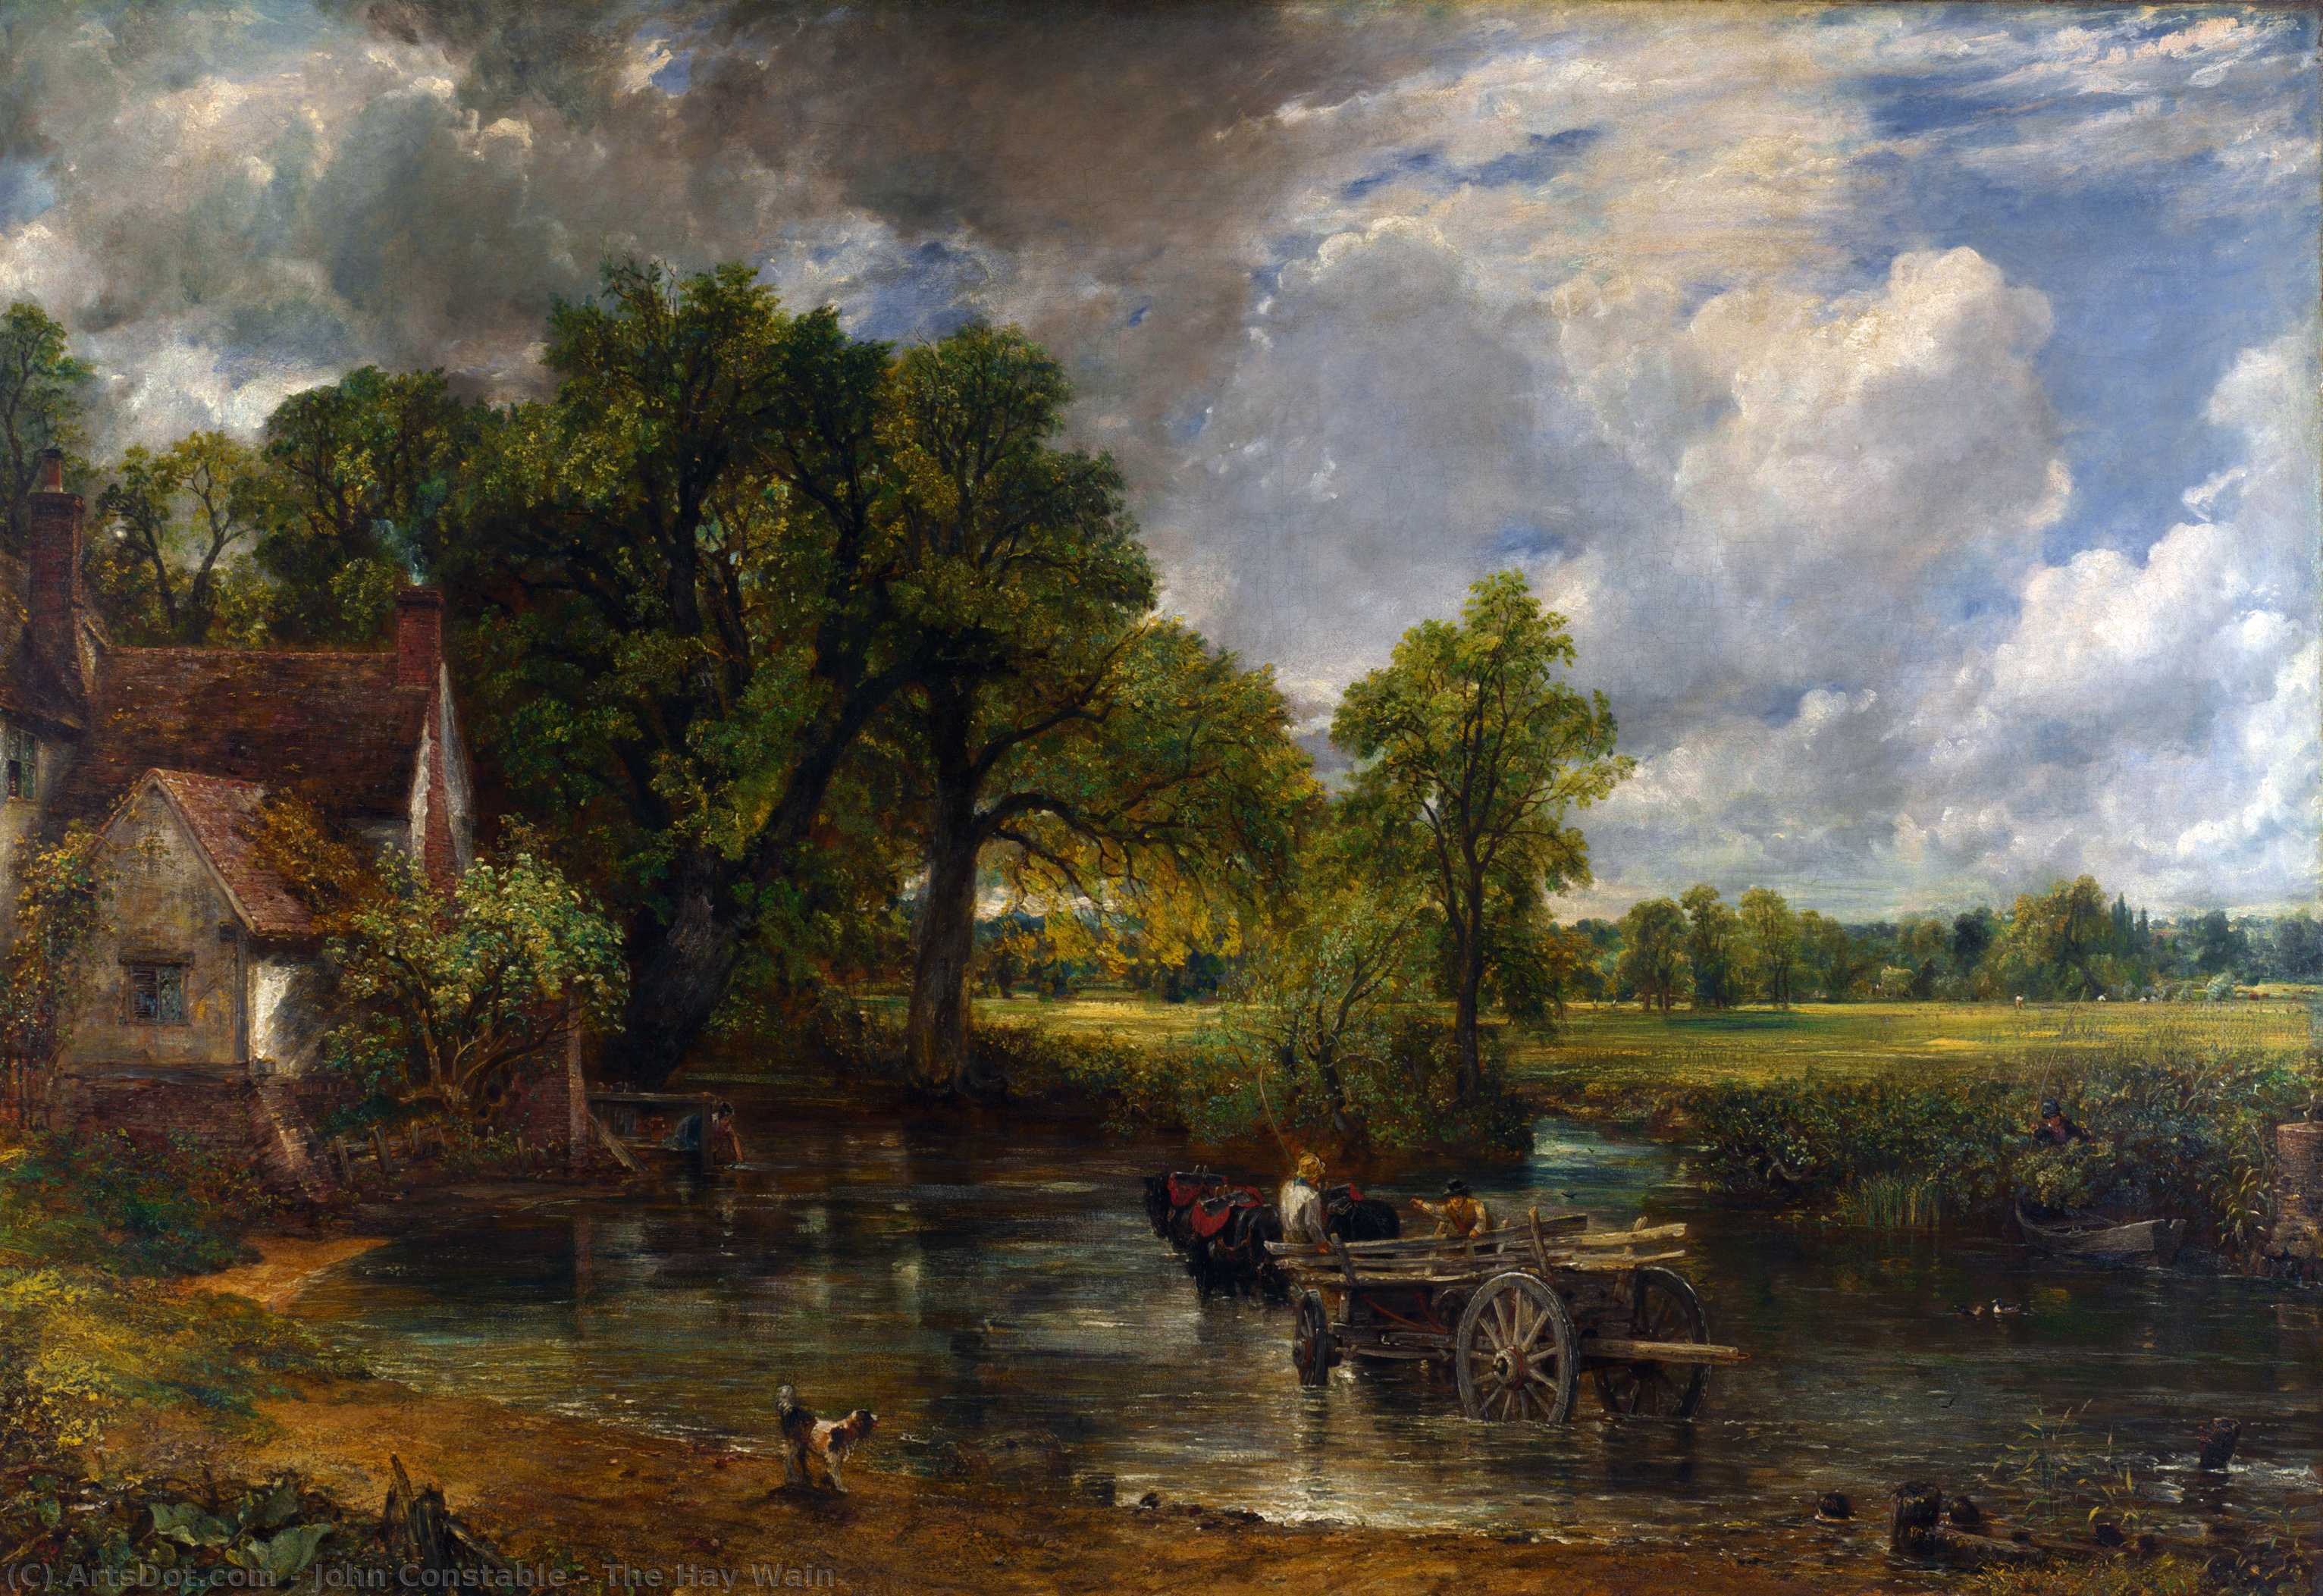 Ordinare Riproduzioni Di Quadri The Hay Wain, 1821 di John Constable (1776-1837, United Kingdom) | ArtsDot.com